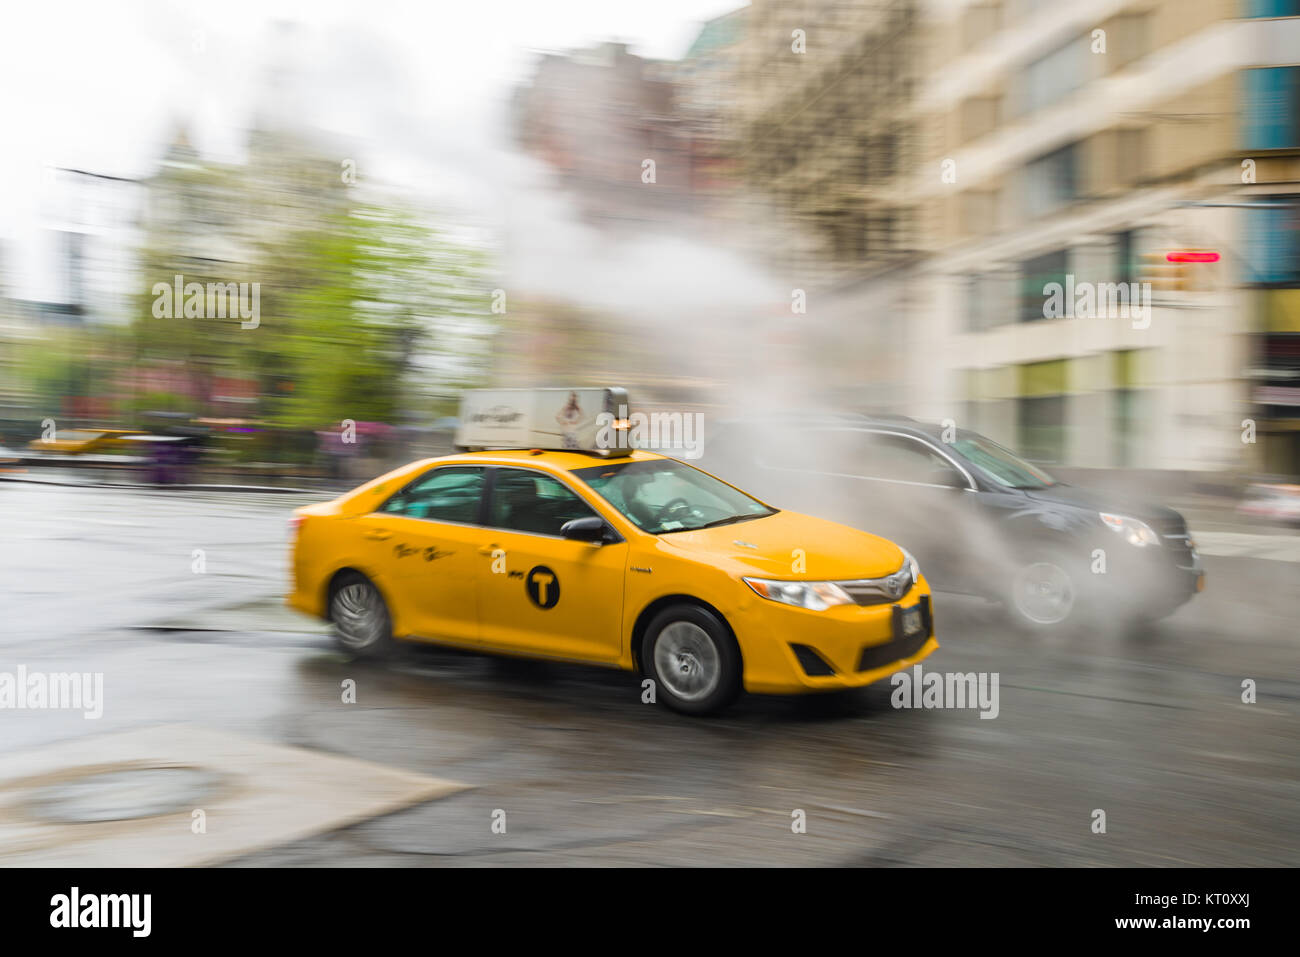 Un panoramique d'un taxi jaune roulant le long d'une rue dans le lower Manhattan, New York, USA Banque D'Images